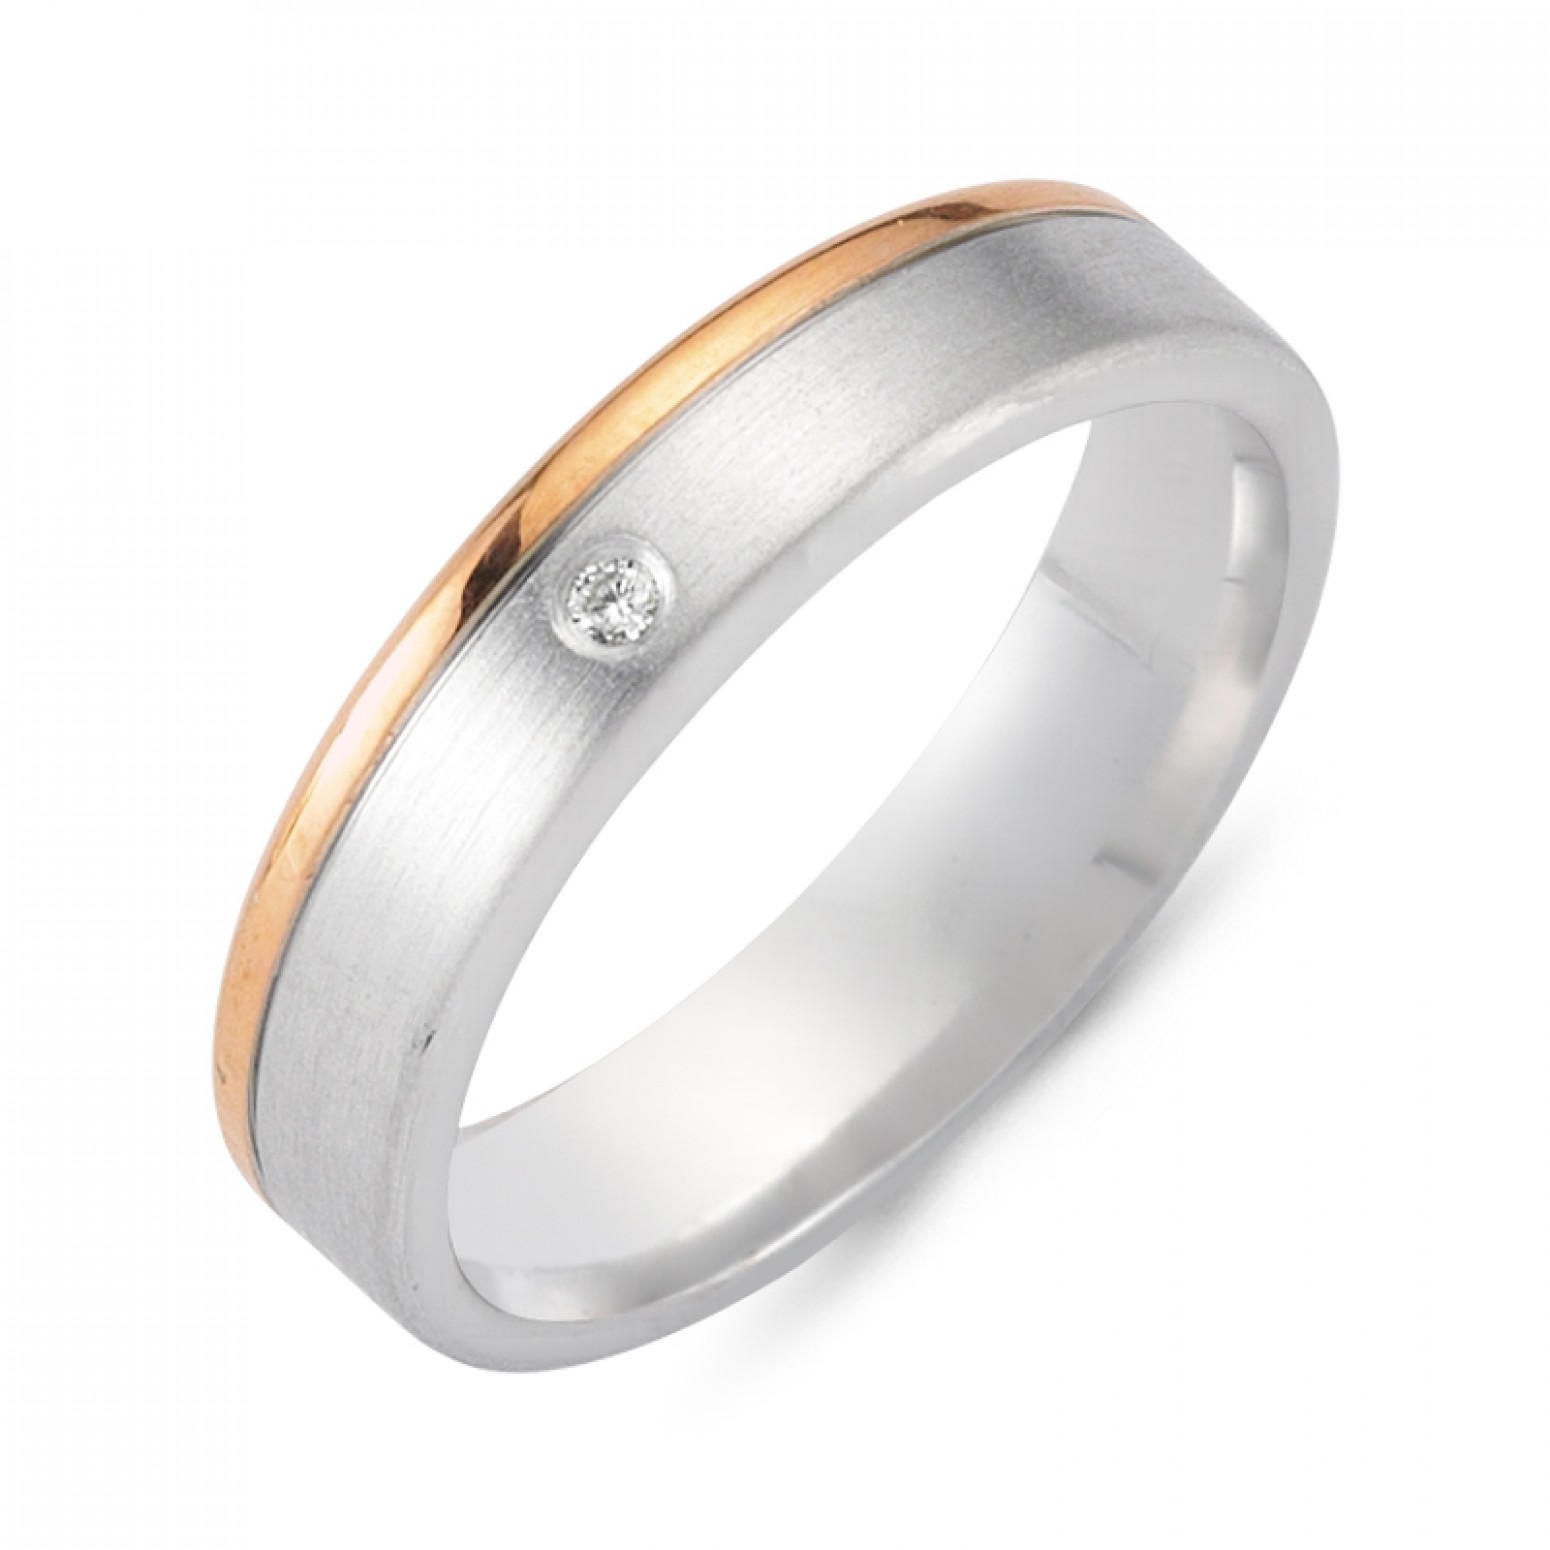 Chrilia wedding rings in white & pink gold, K14, pair da2781 WEDDING RINGS Κοσμηματα - chrilia.gr